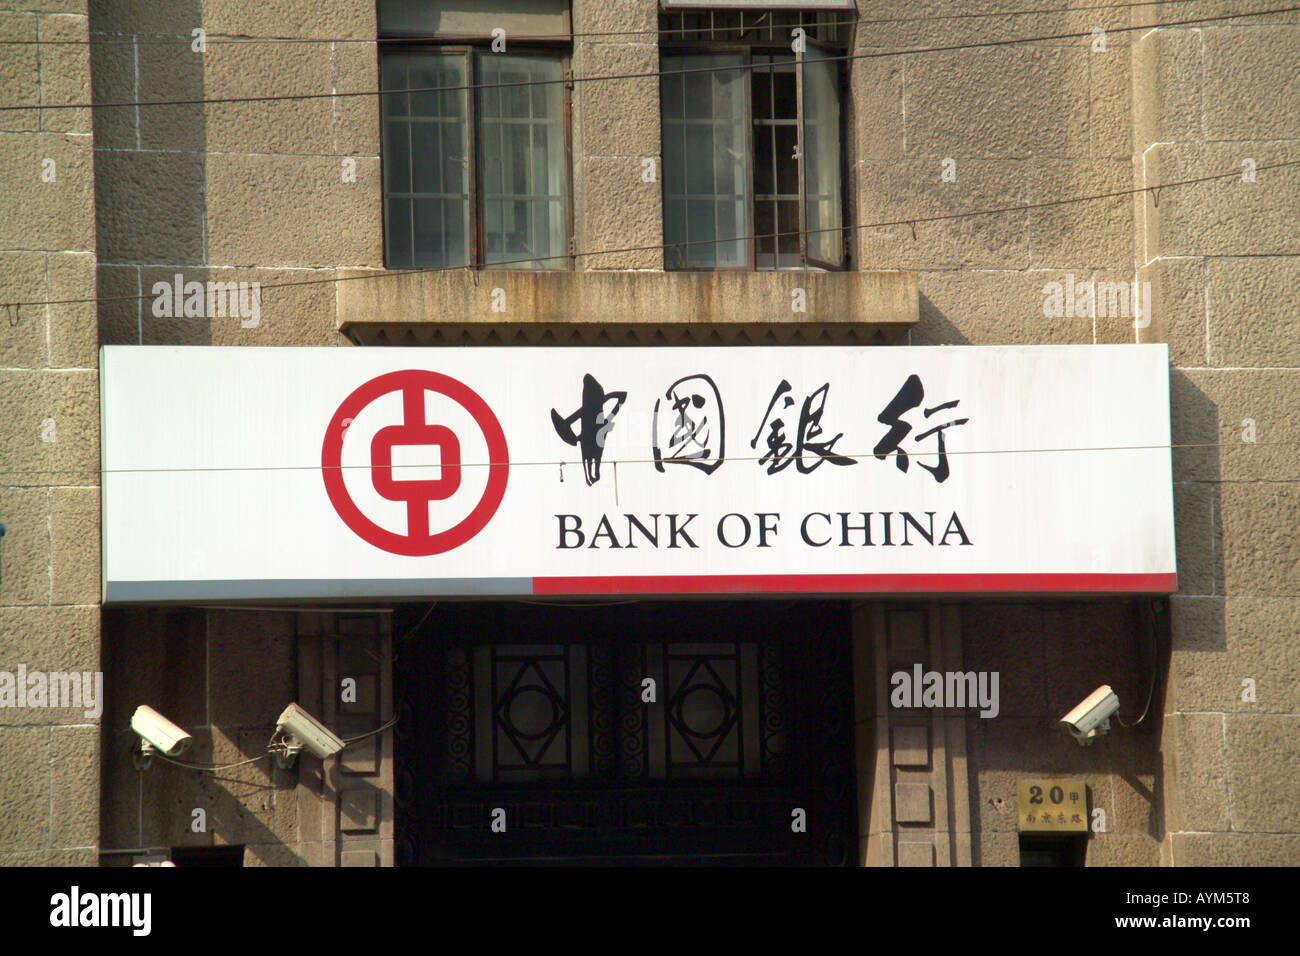 Bank of China signage Stock Photo